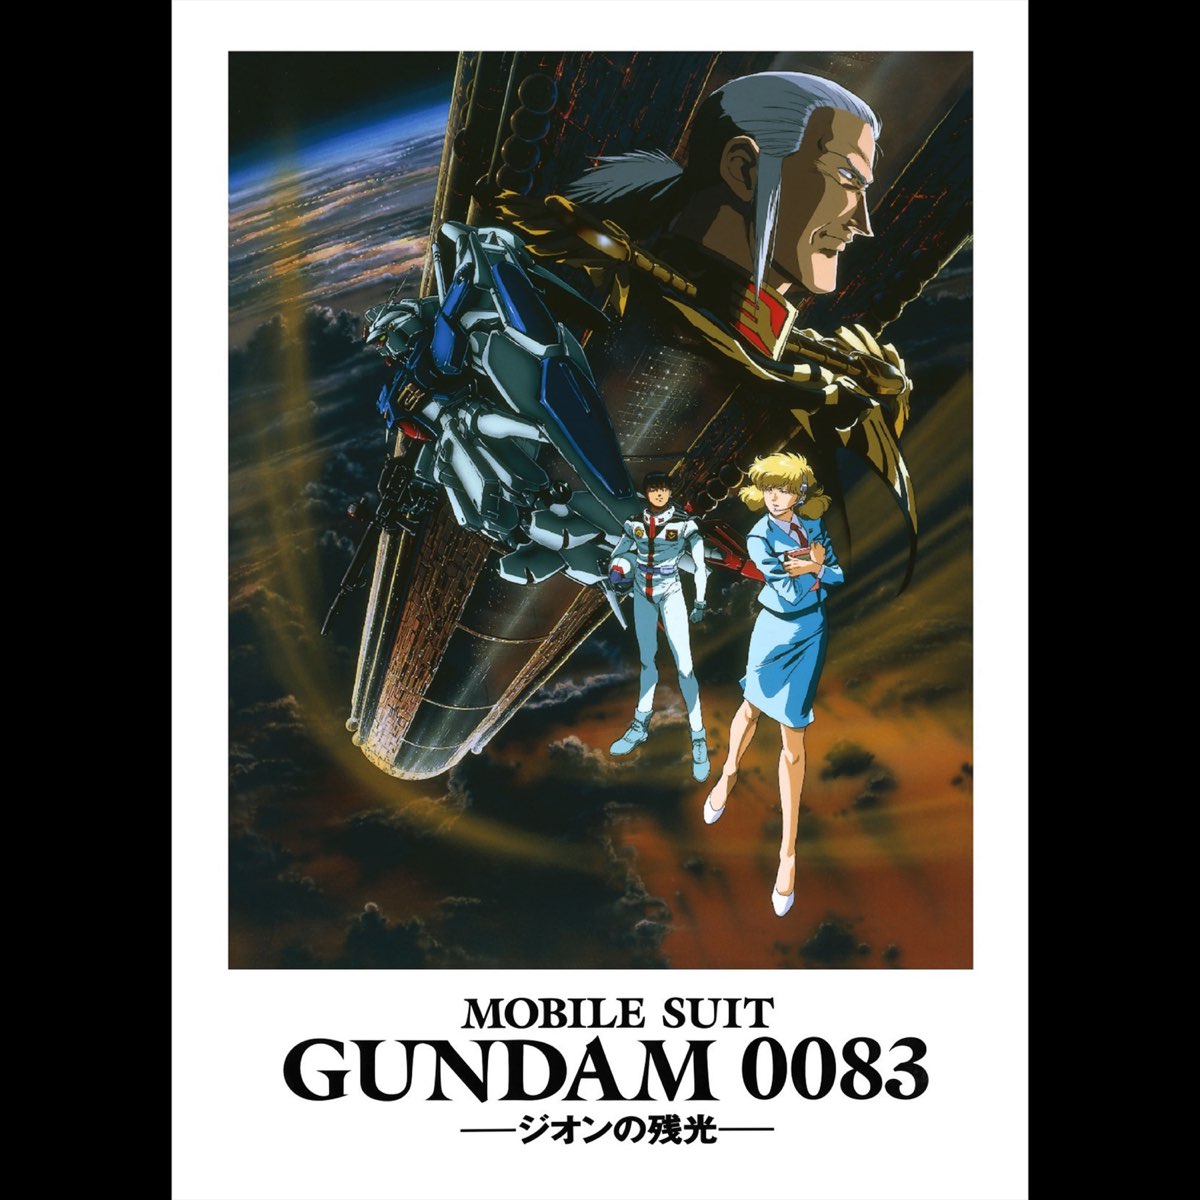 機動戦士ガンダム0083 MOBILE SUIT ジオンの残光 B2ポスター - ポスター